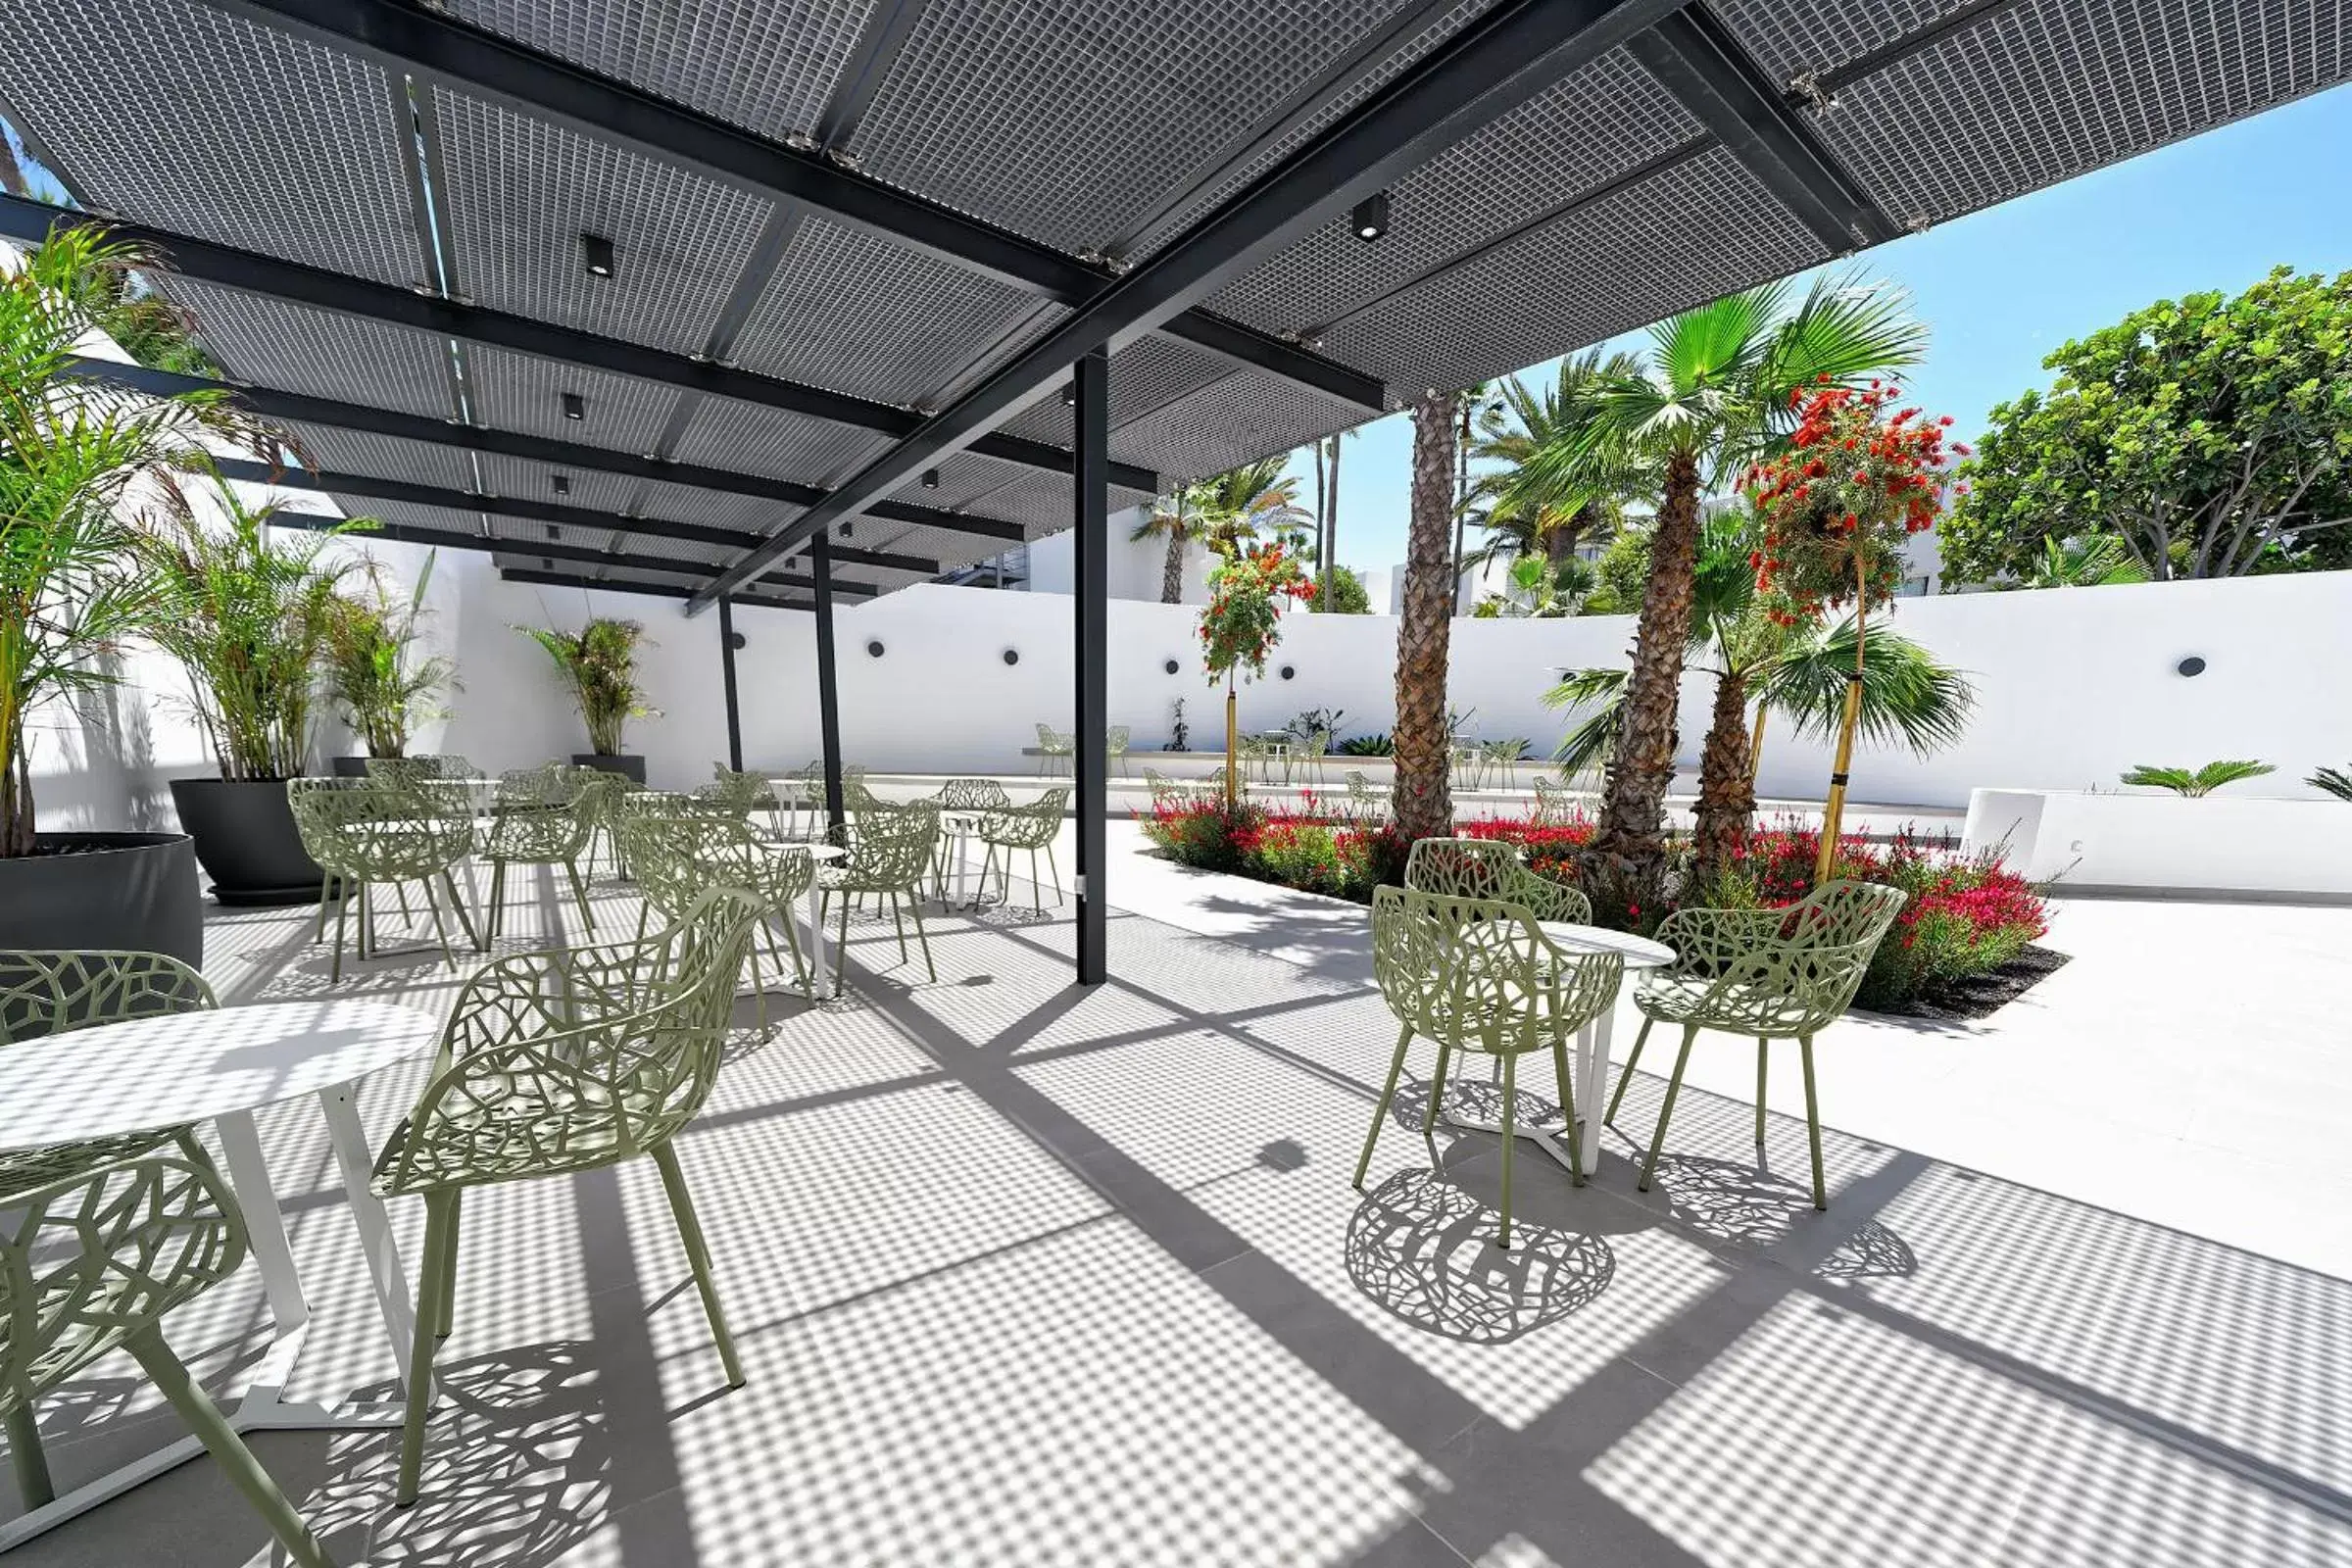 Balcony/Terrace, Patio/Outdoor Area in Aequora Lanzarote Suites